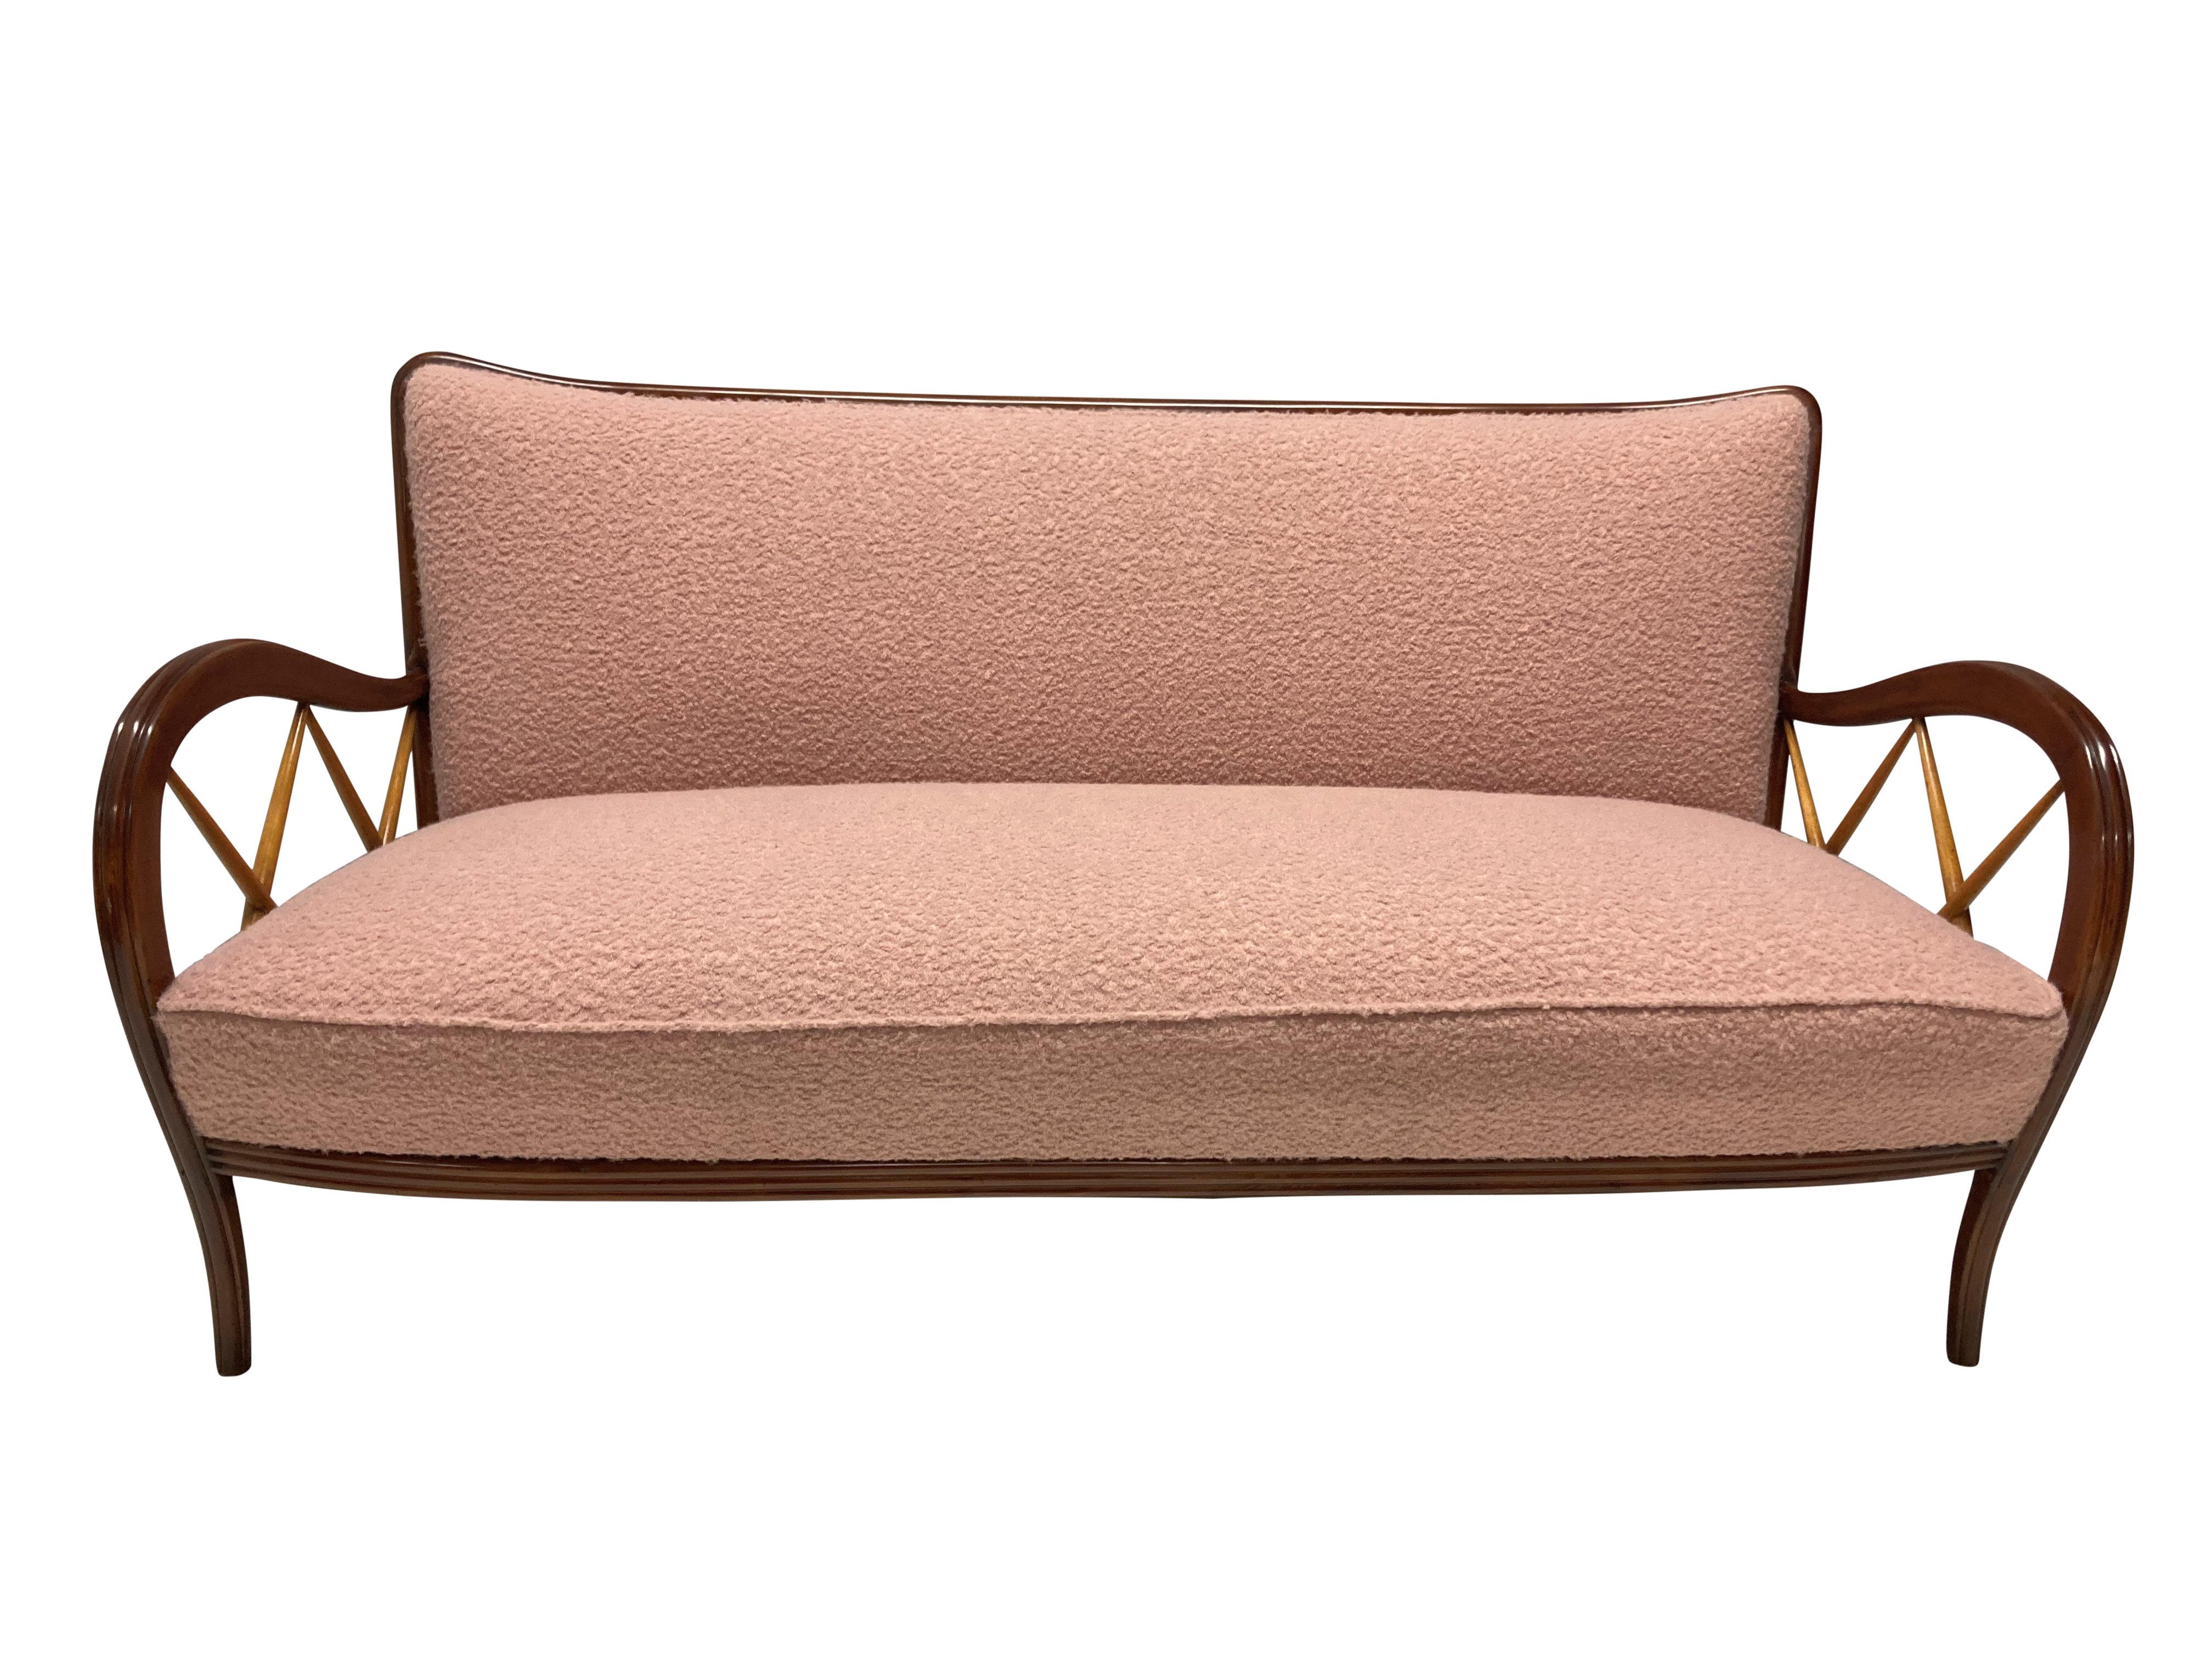 Canapé italien élégant de Paolo Buffa. En noyer et en bois blond et nouvellement tapissé en bouclette rose poussiéreuse. En suite avec une paire de fauteuils assortis.